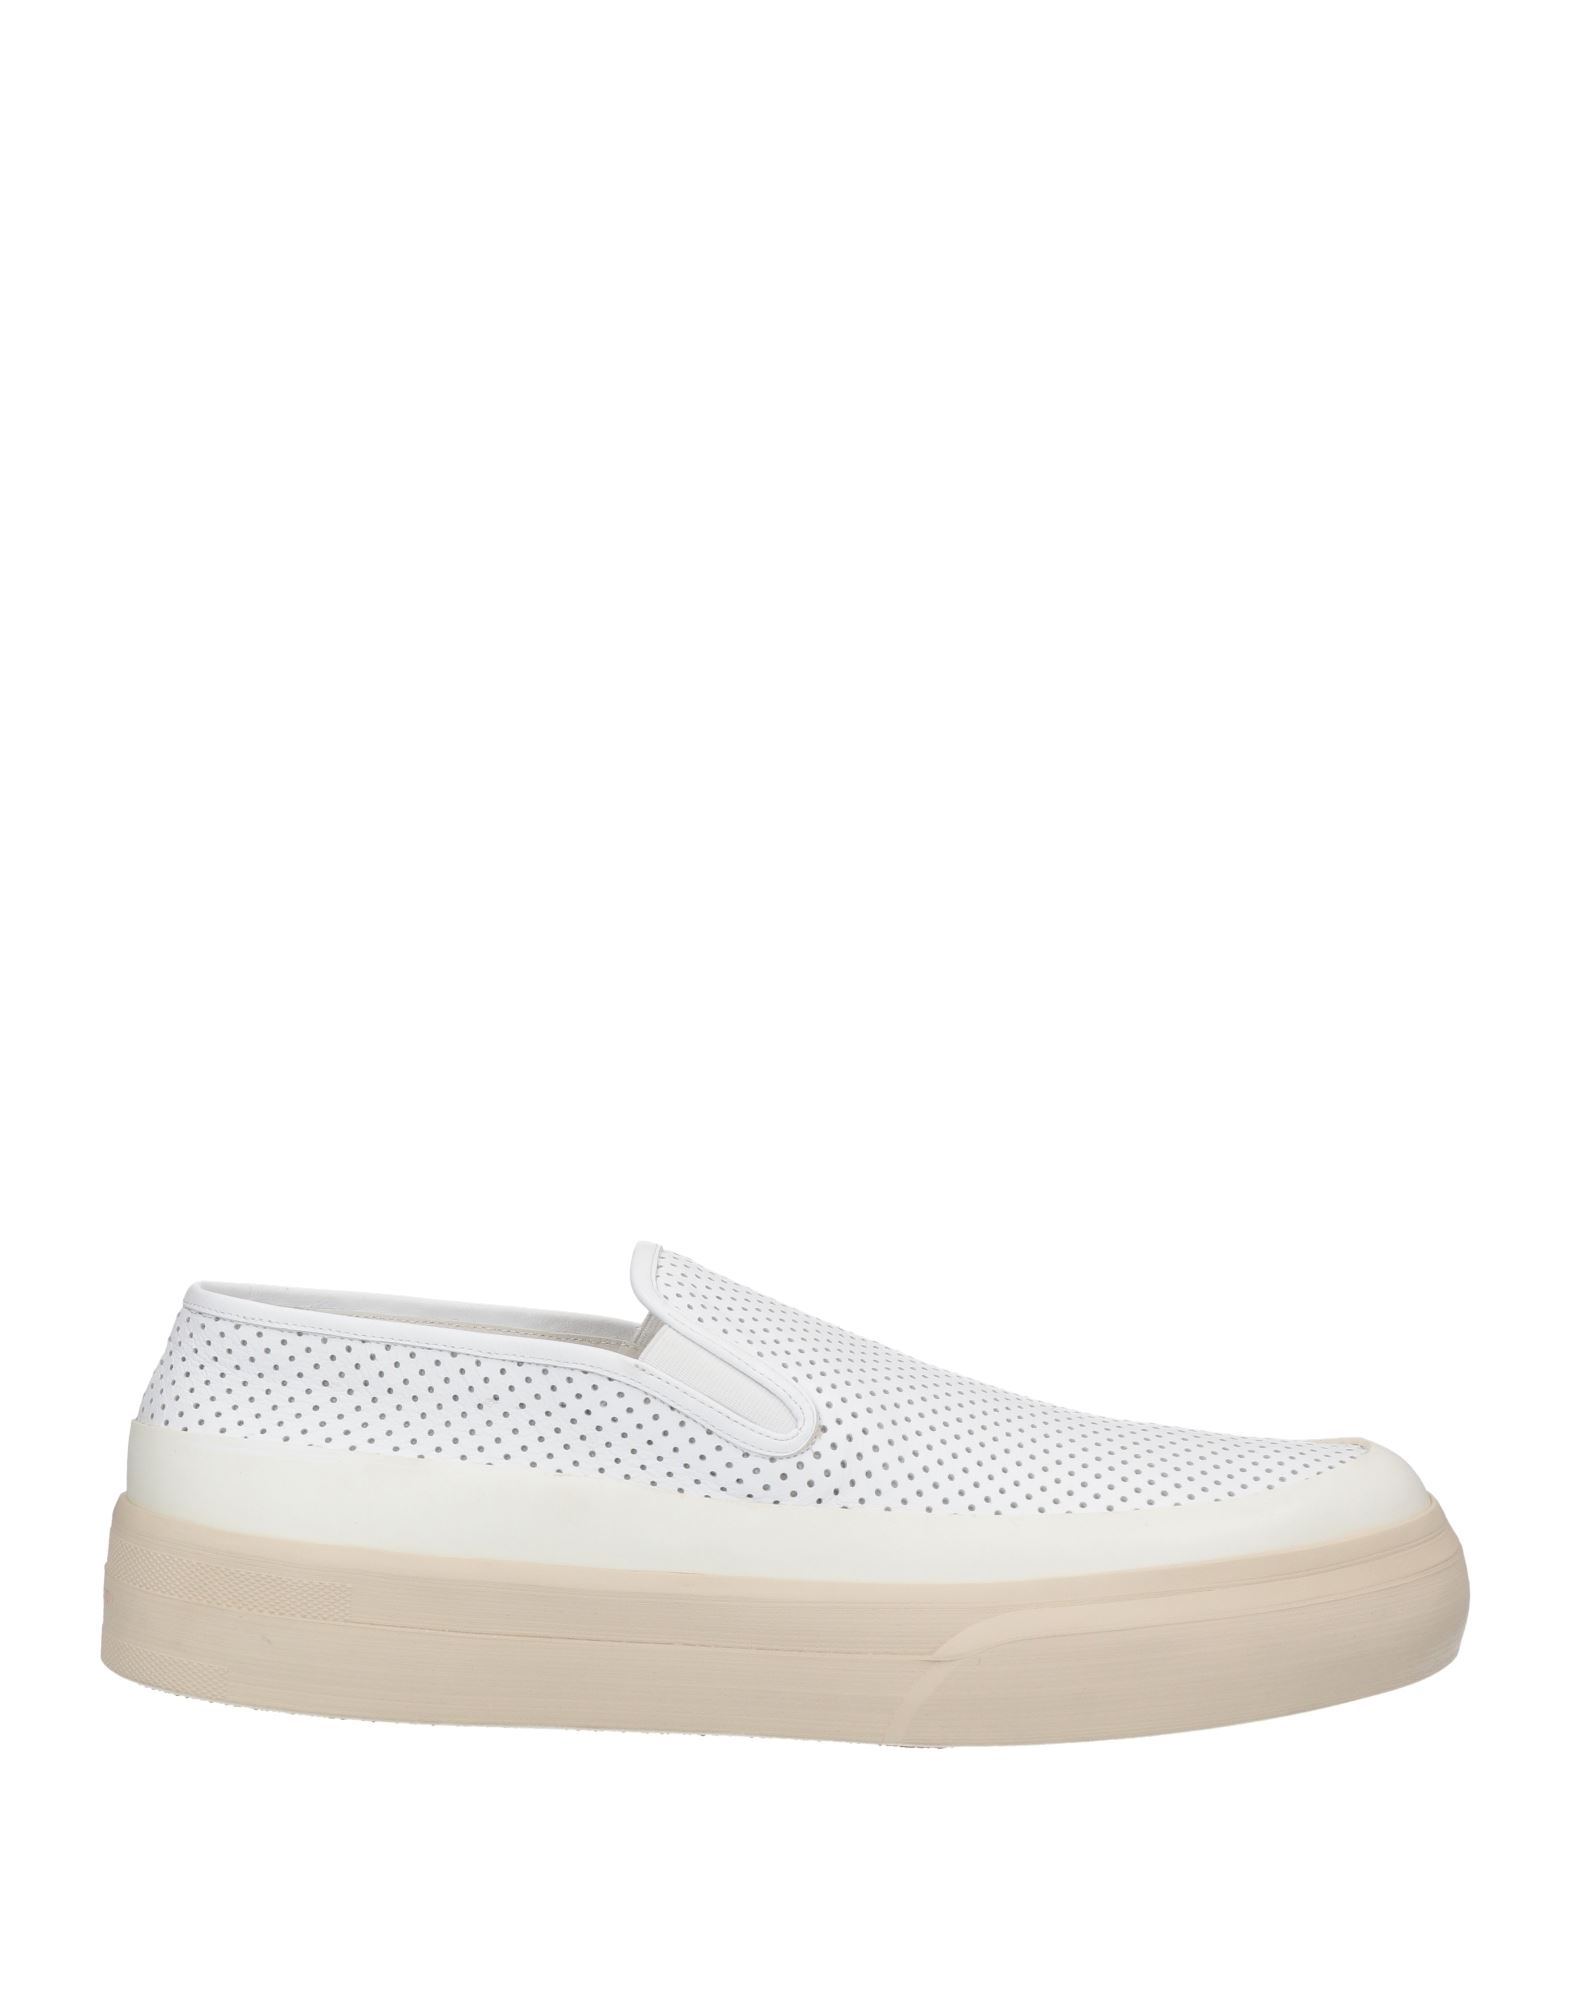 Dries Van Noten Sneakers In White